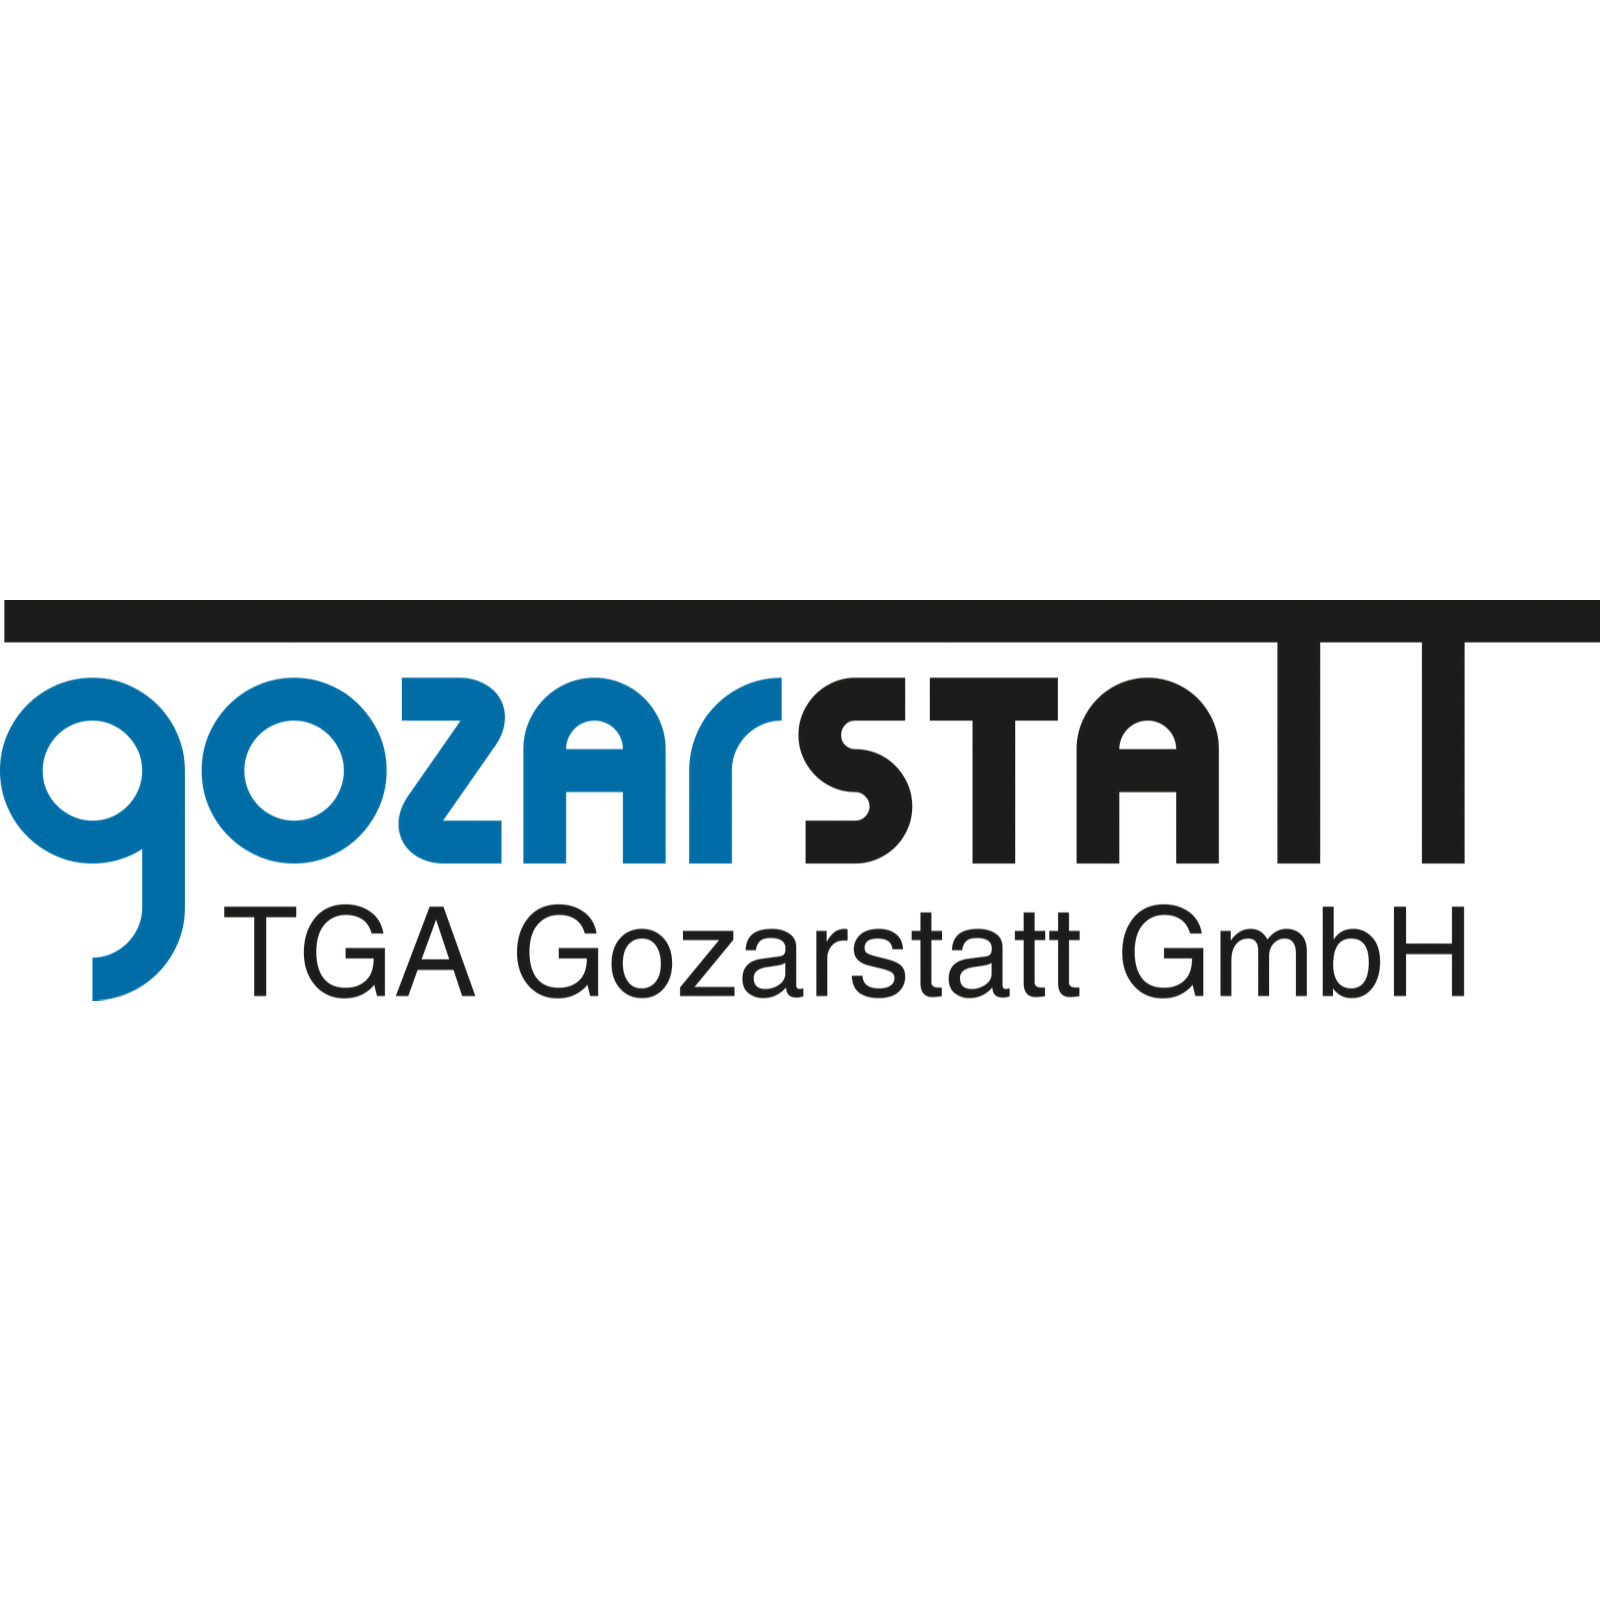 TGA Gozarstatt GmbH Dipl. Ök. Jörn Müller in Erfurt